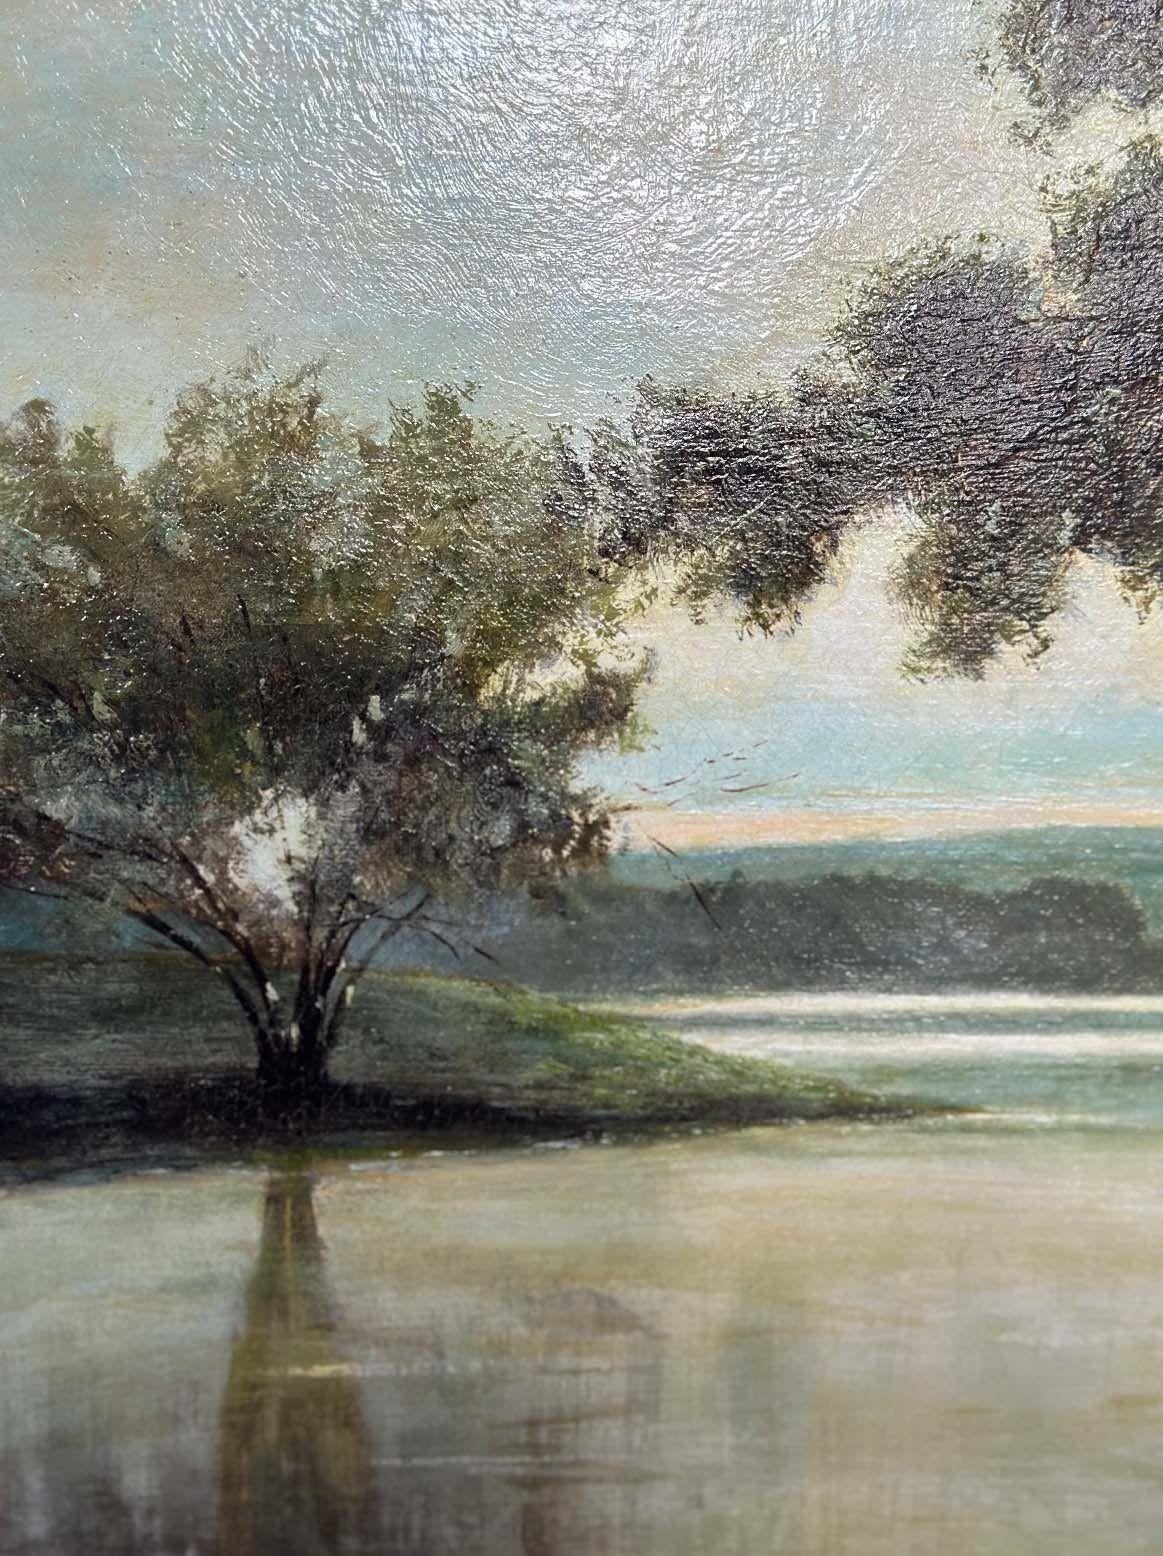 Sereine huile sur toile représentant une vue d'un lac et un pêcheur dans son bateau ainsi que des arbres tout autour. Les tons bleus et verts ajoutent à l'ambiance paisible du paysage. L'œuvre est protégée par un cadre en bois doré sculpté à la